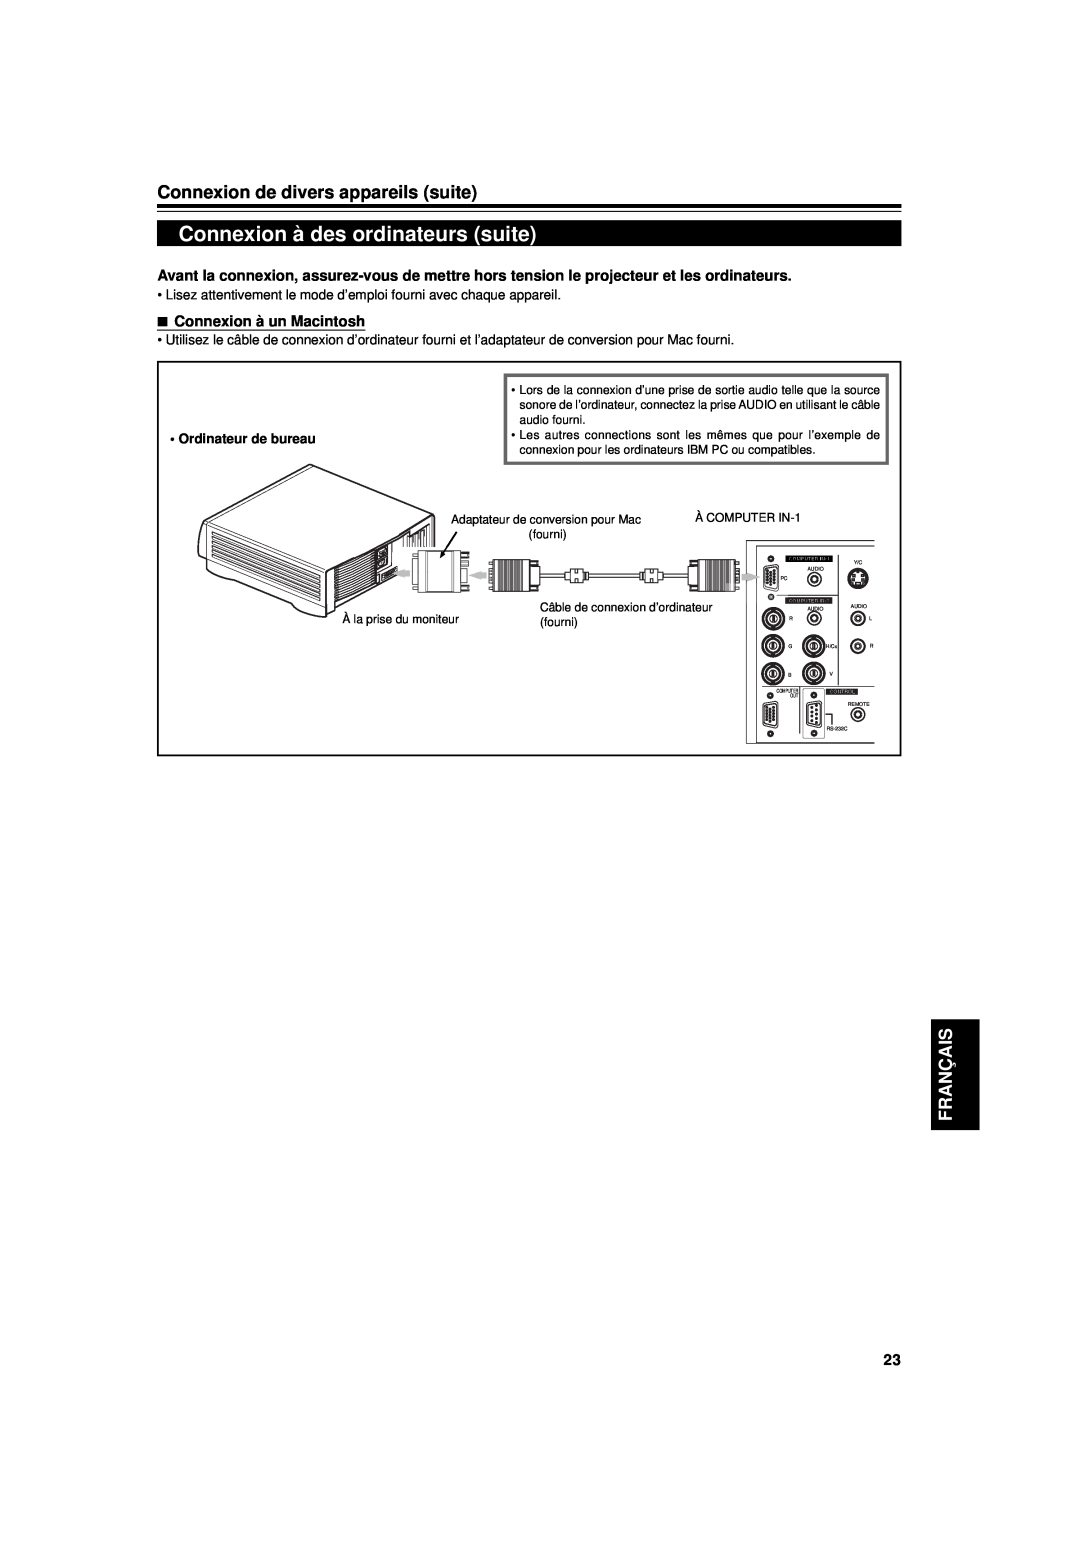 JVC DLA-G15U Connexion à des ordinateurs suite, Connexion de divers appareils suite, Français, Connexion à un Macintosh 